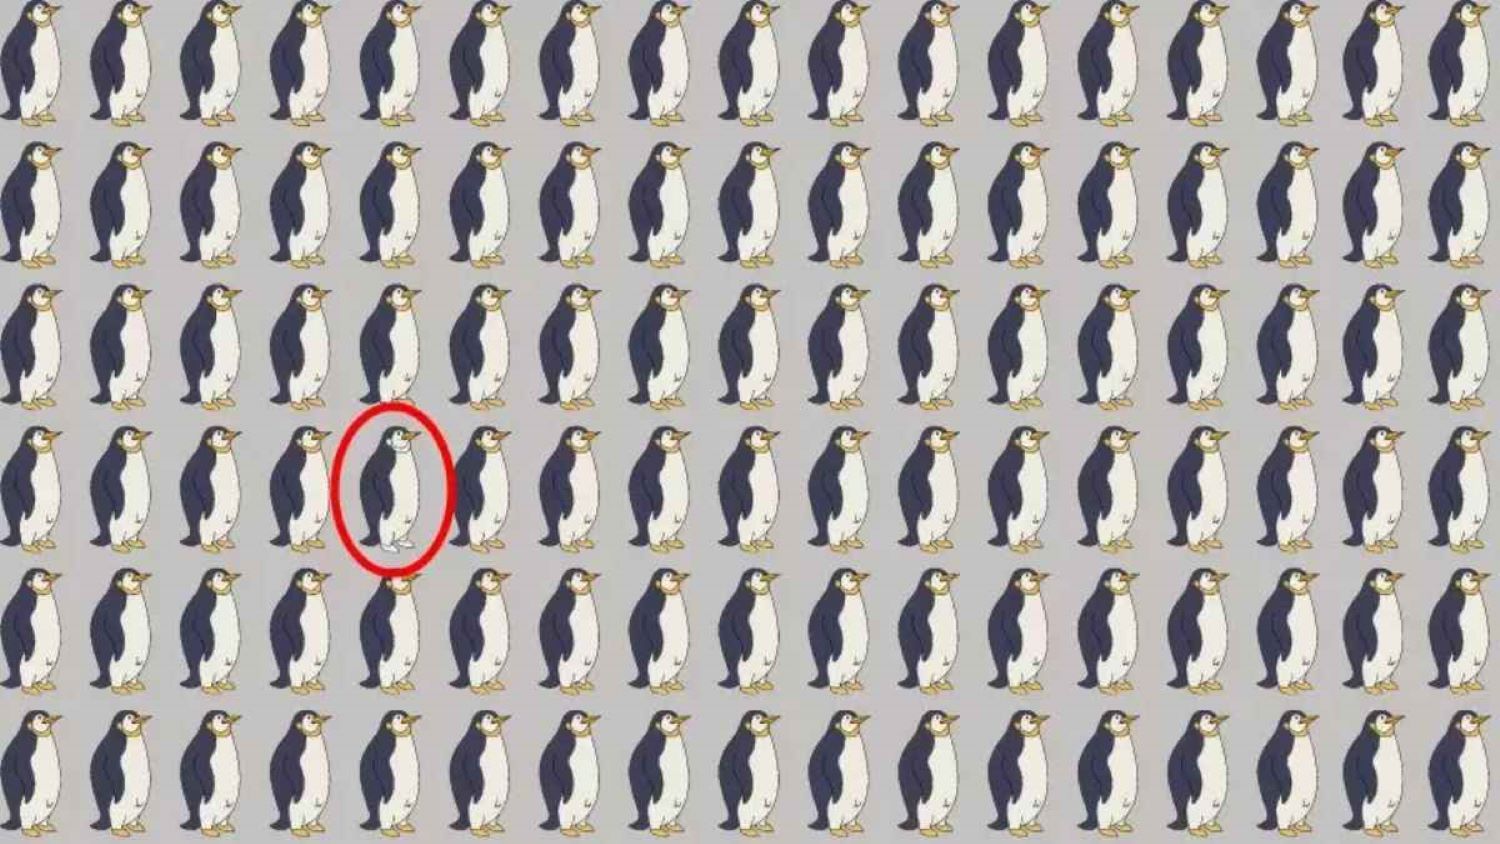 Jawaban tes ilusi optik, temukan penguin yang berbeda